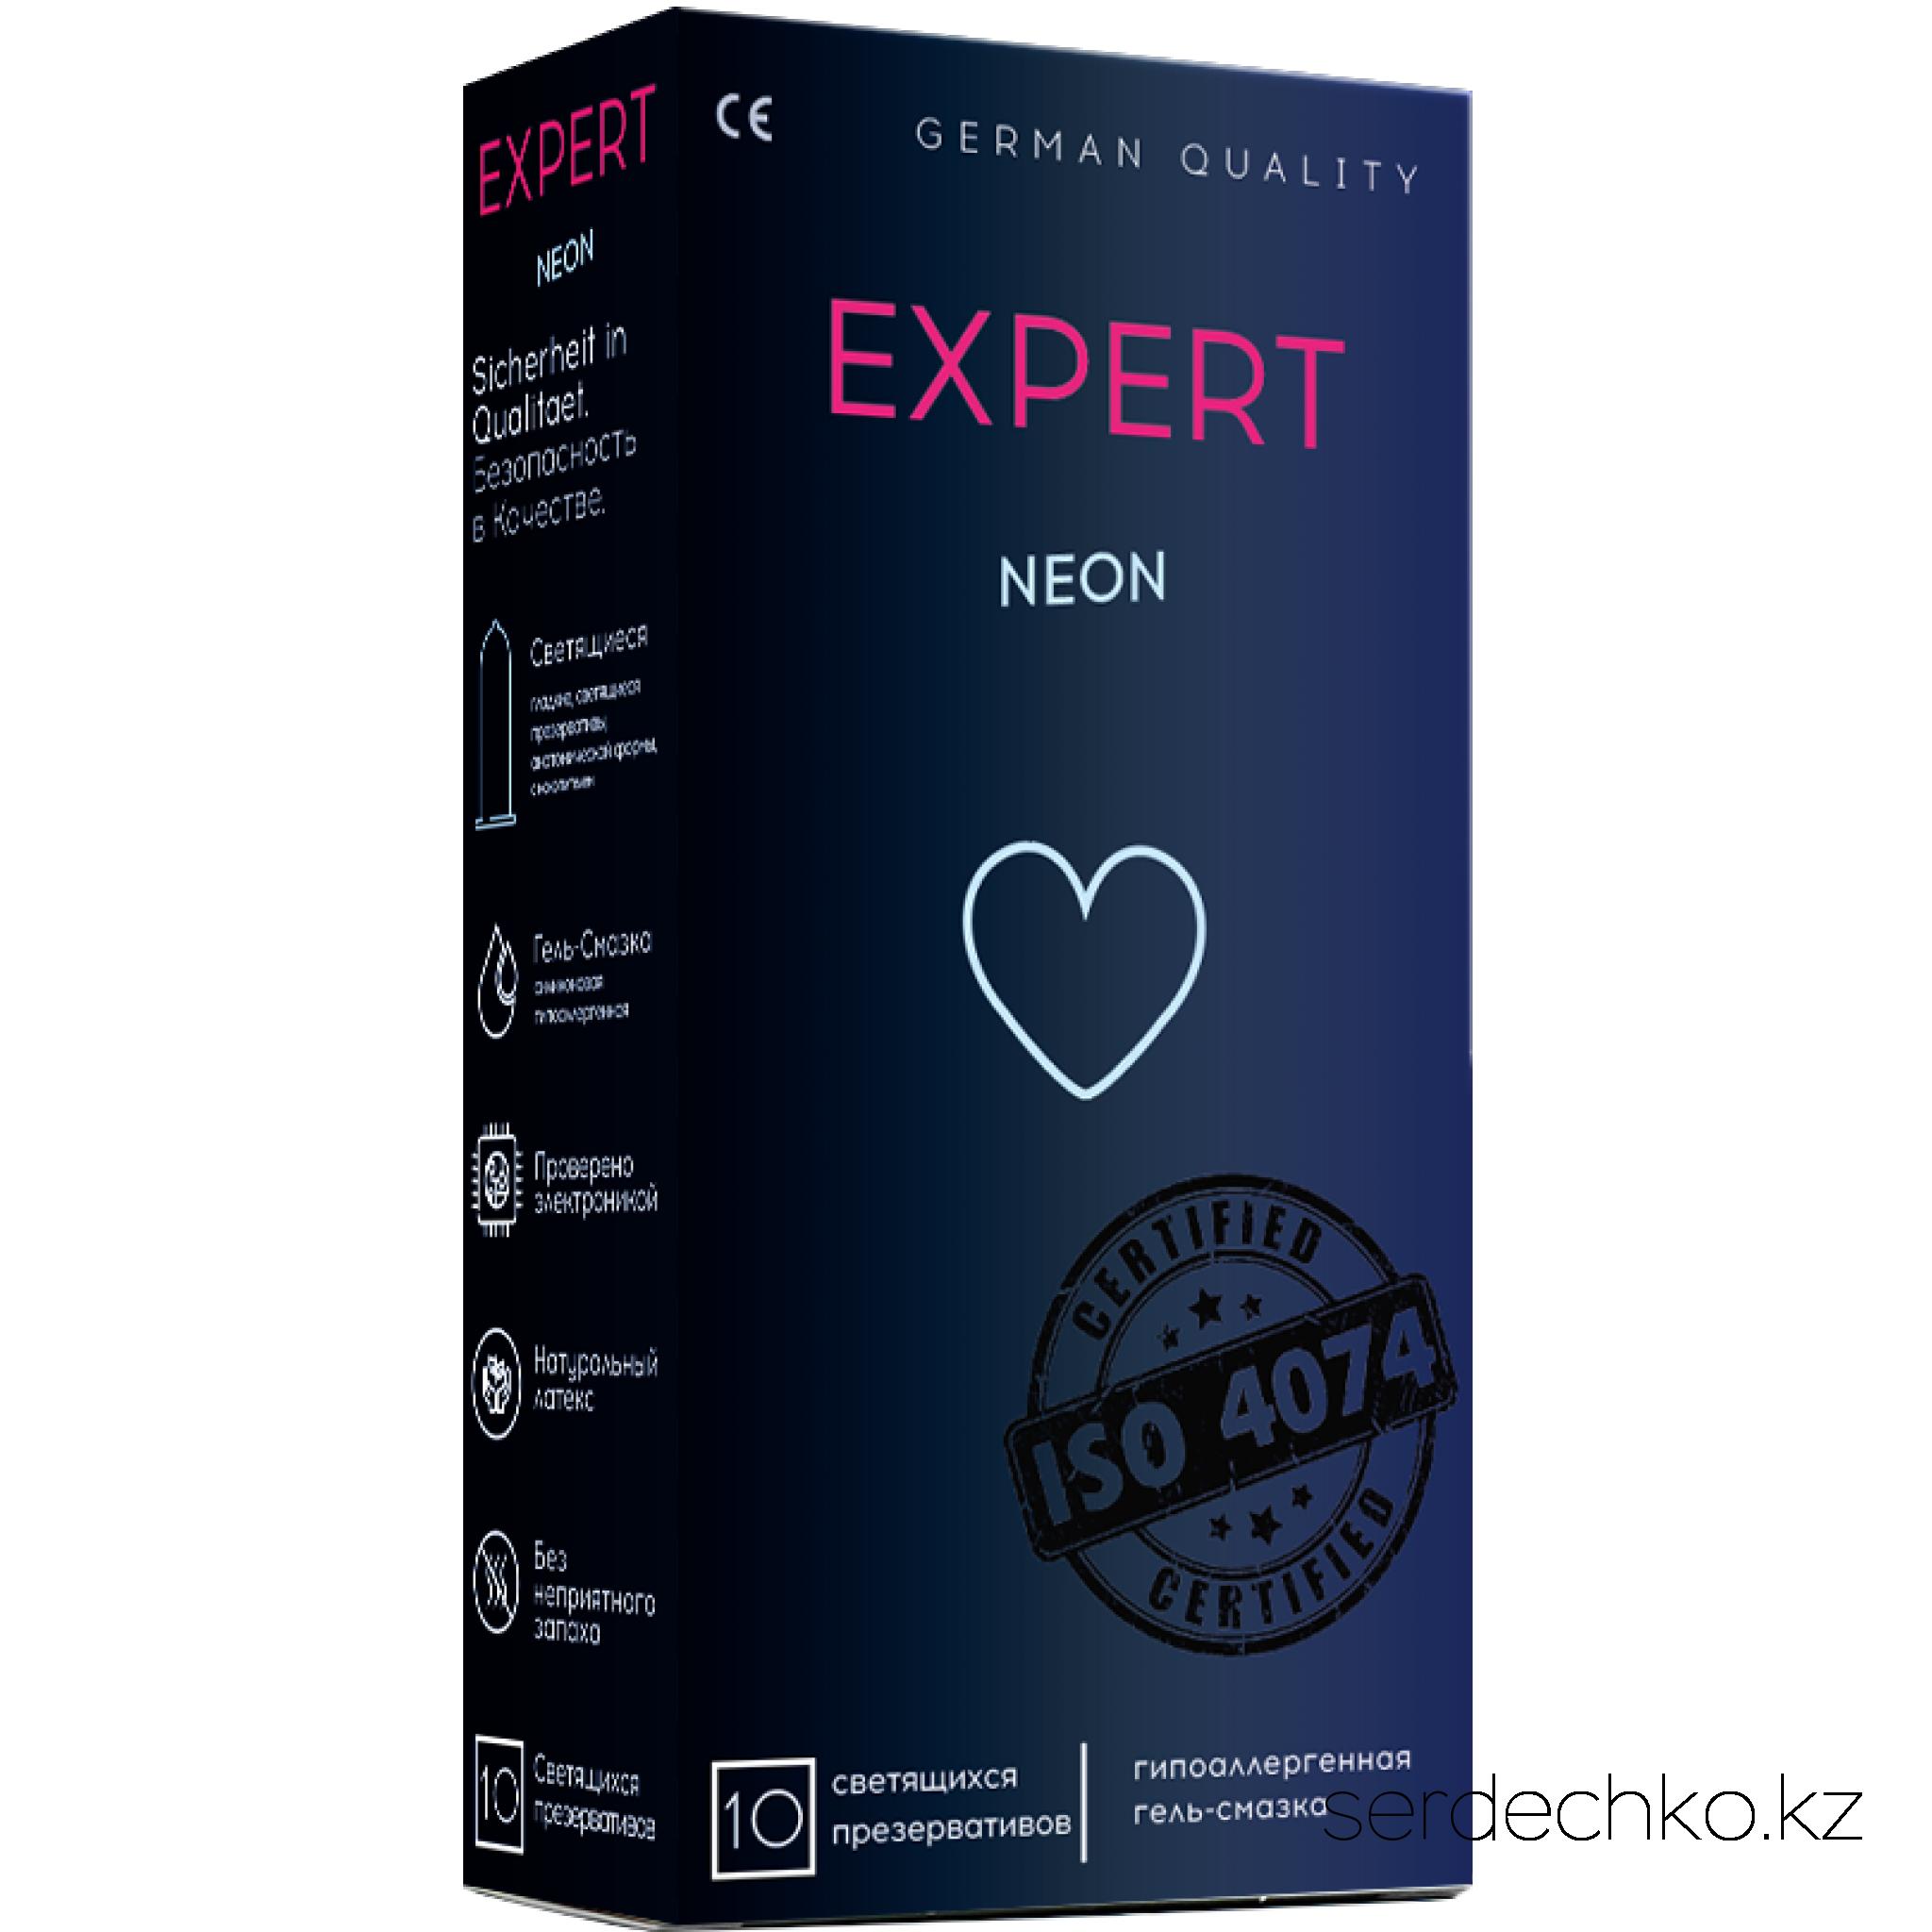 ПРЕЗЕРВАТИВЫ EXPERT NEON № 10 (СВЕТЯЩИЕСЯ), 10 штук, 
	NEON - Гладкие латексные презервативы, обработанные силиконовой смазкой со светящимся слоем.
